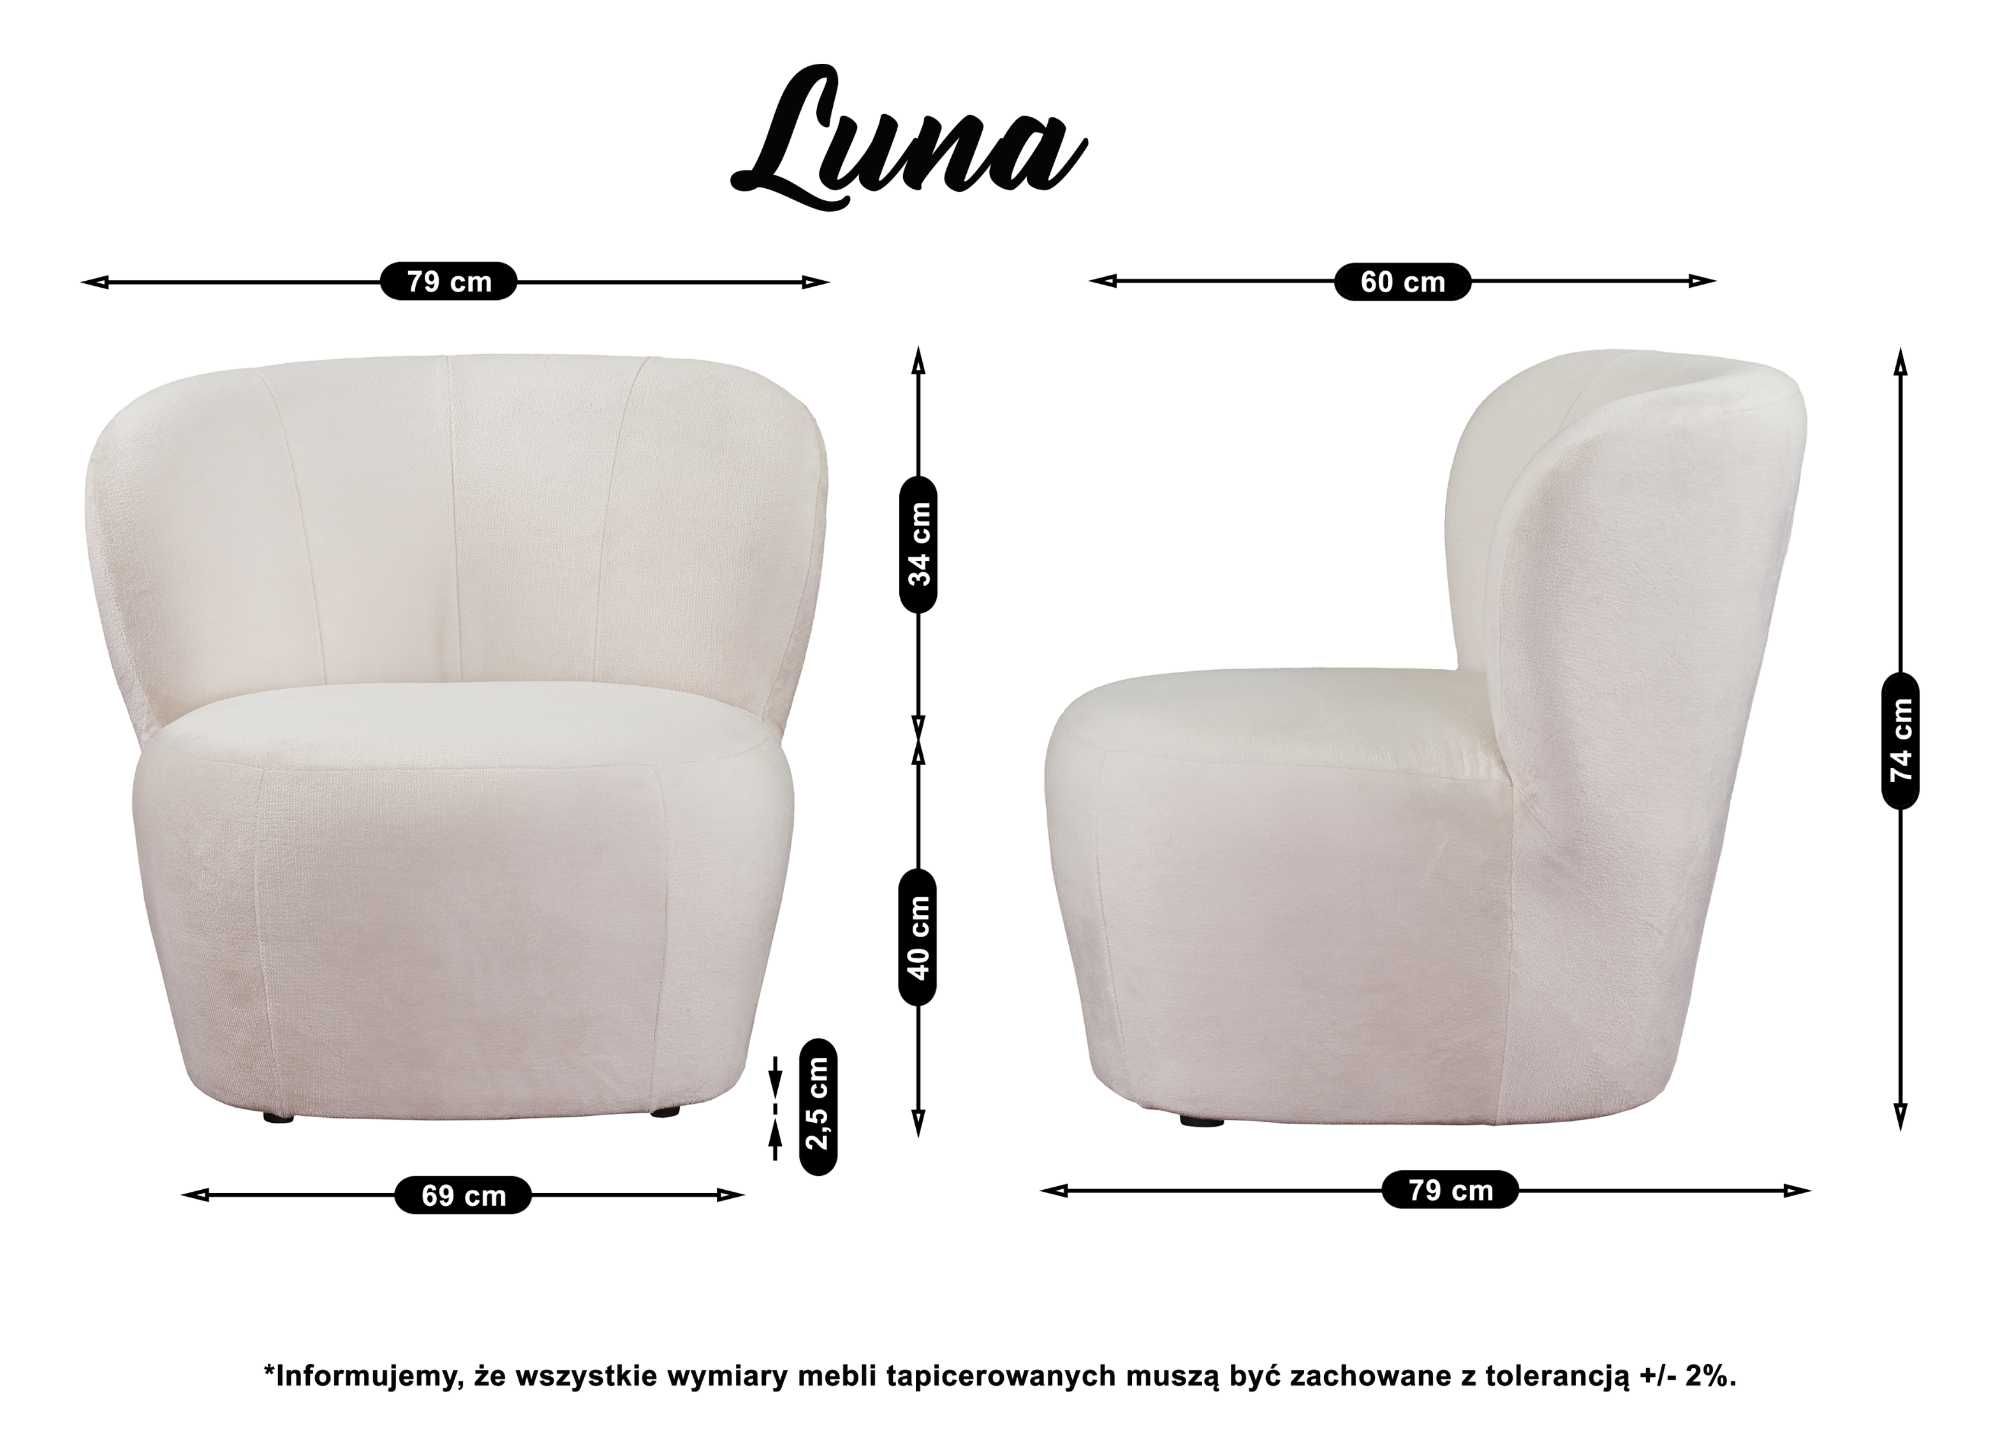 Modny fotel Luna uszak kubełkowy